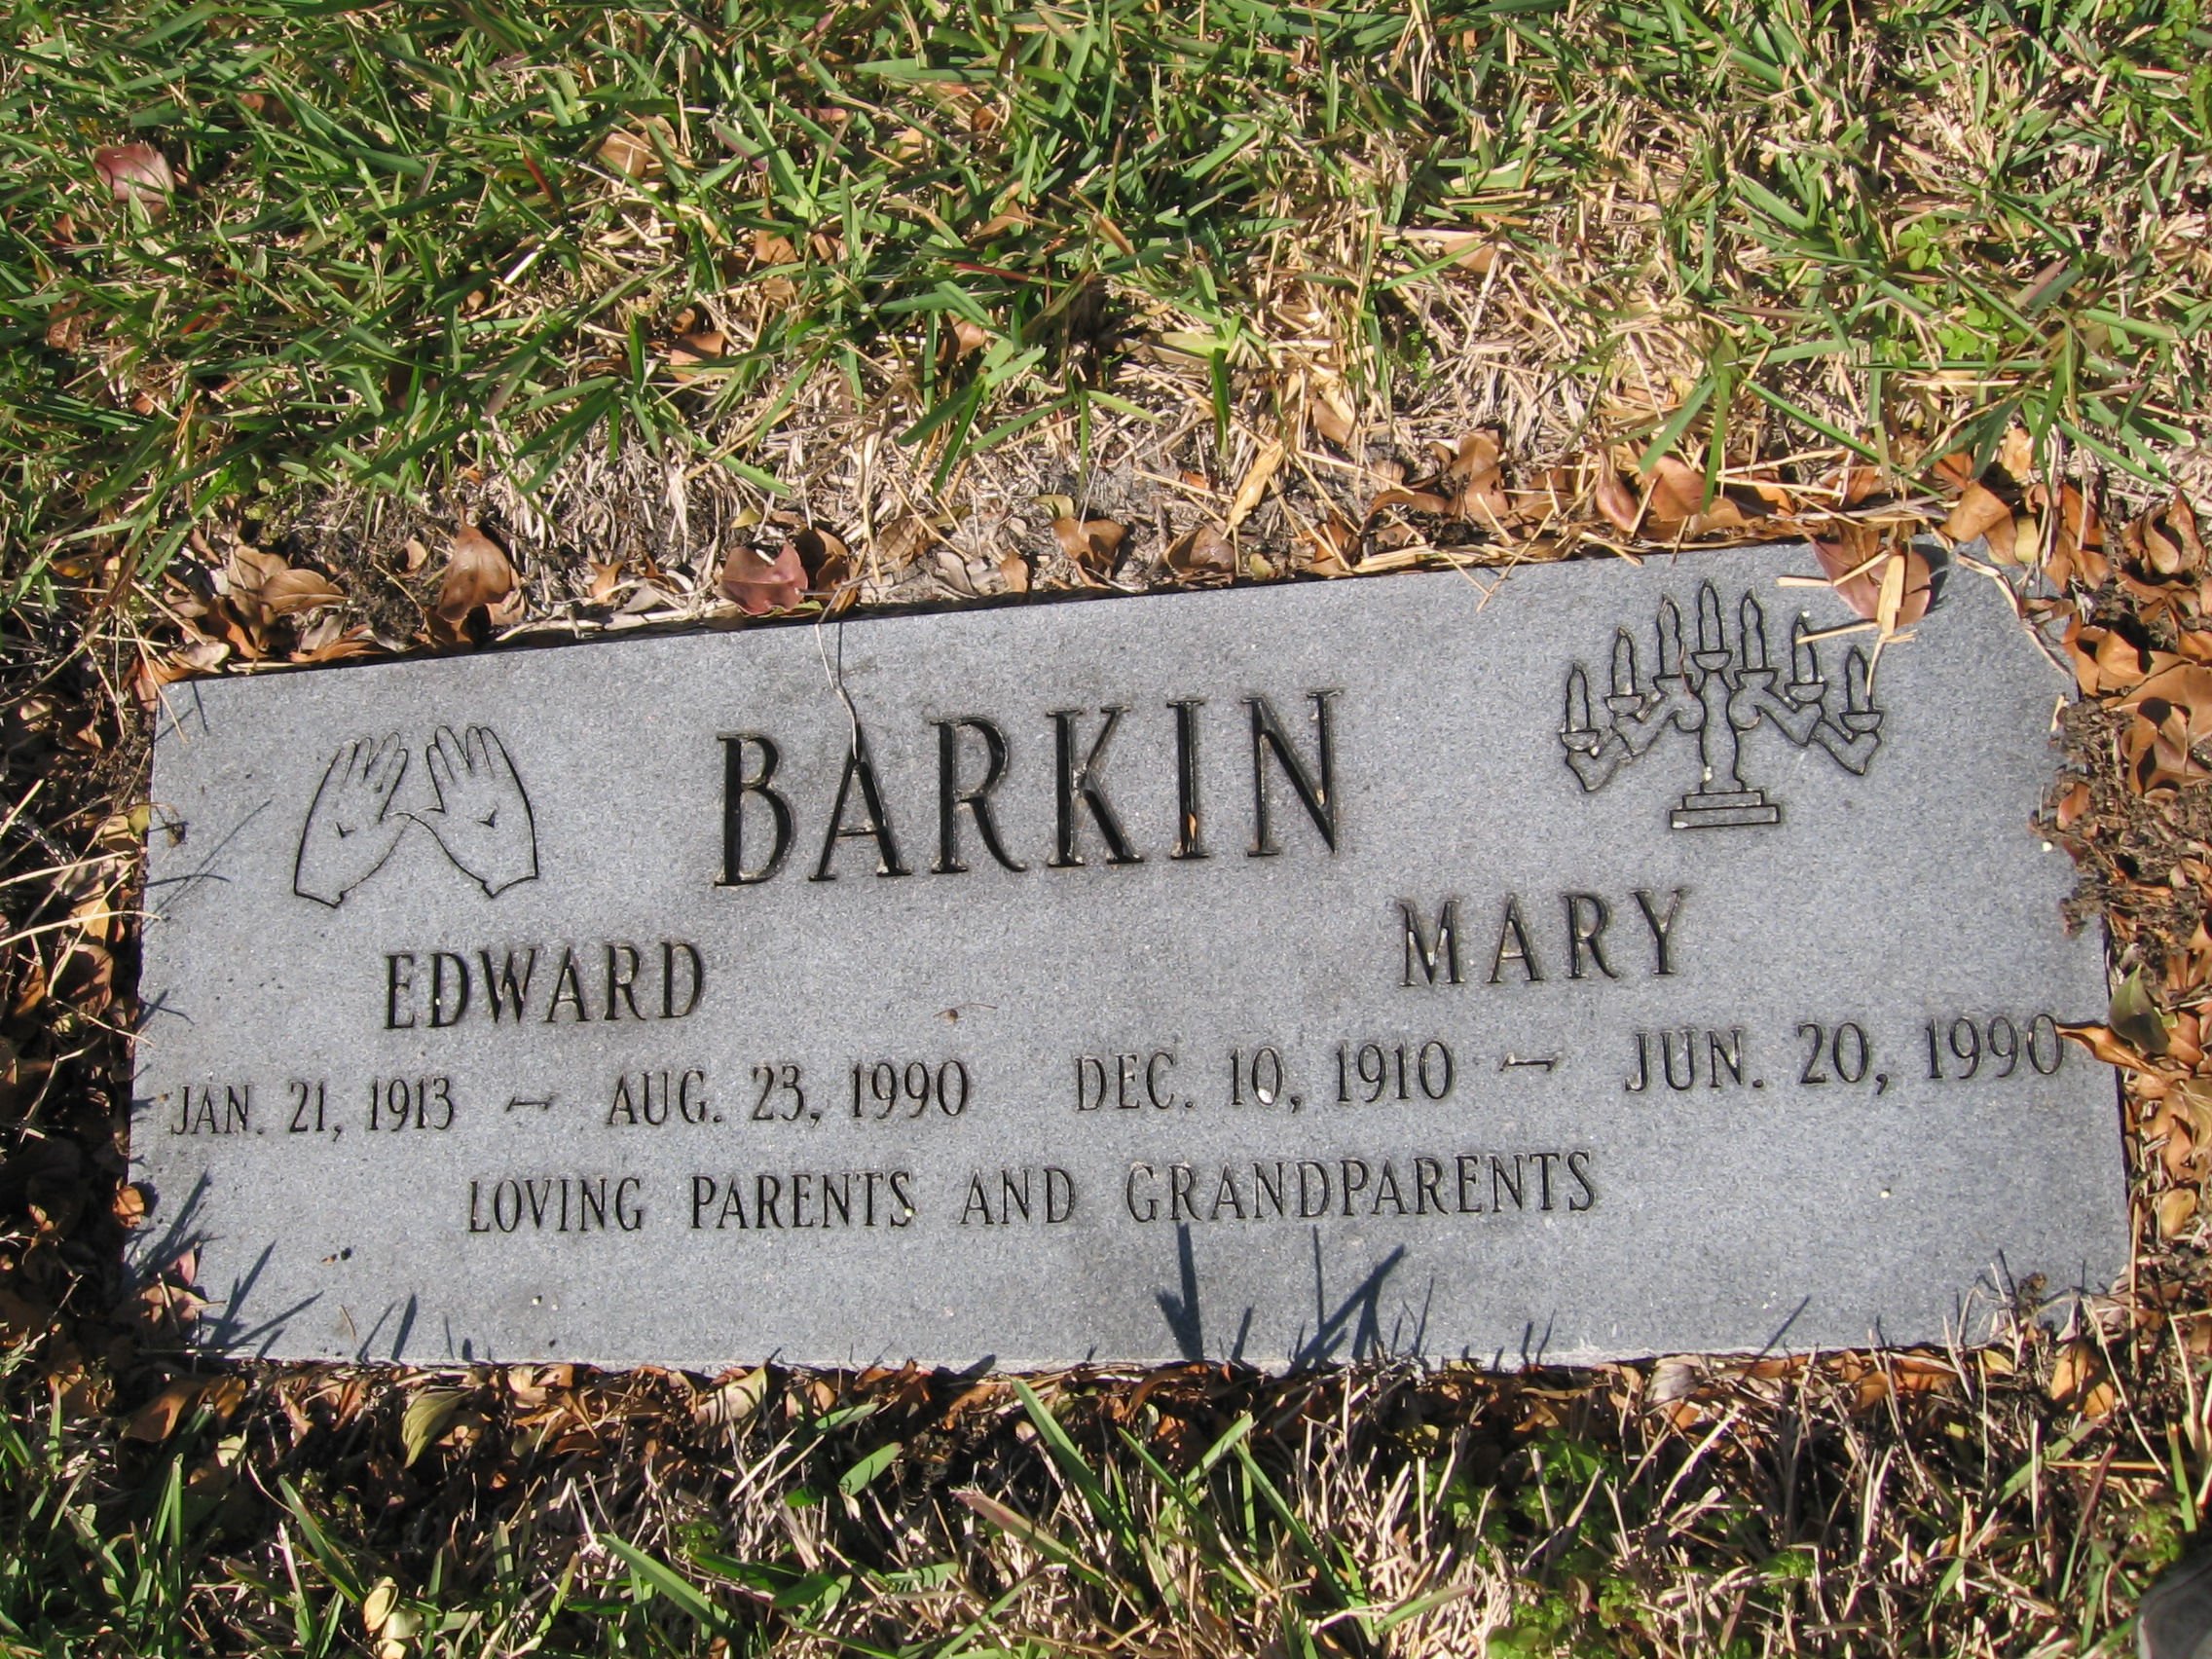 Edward Barkin